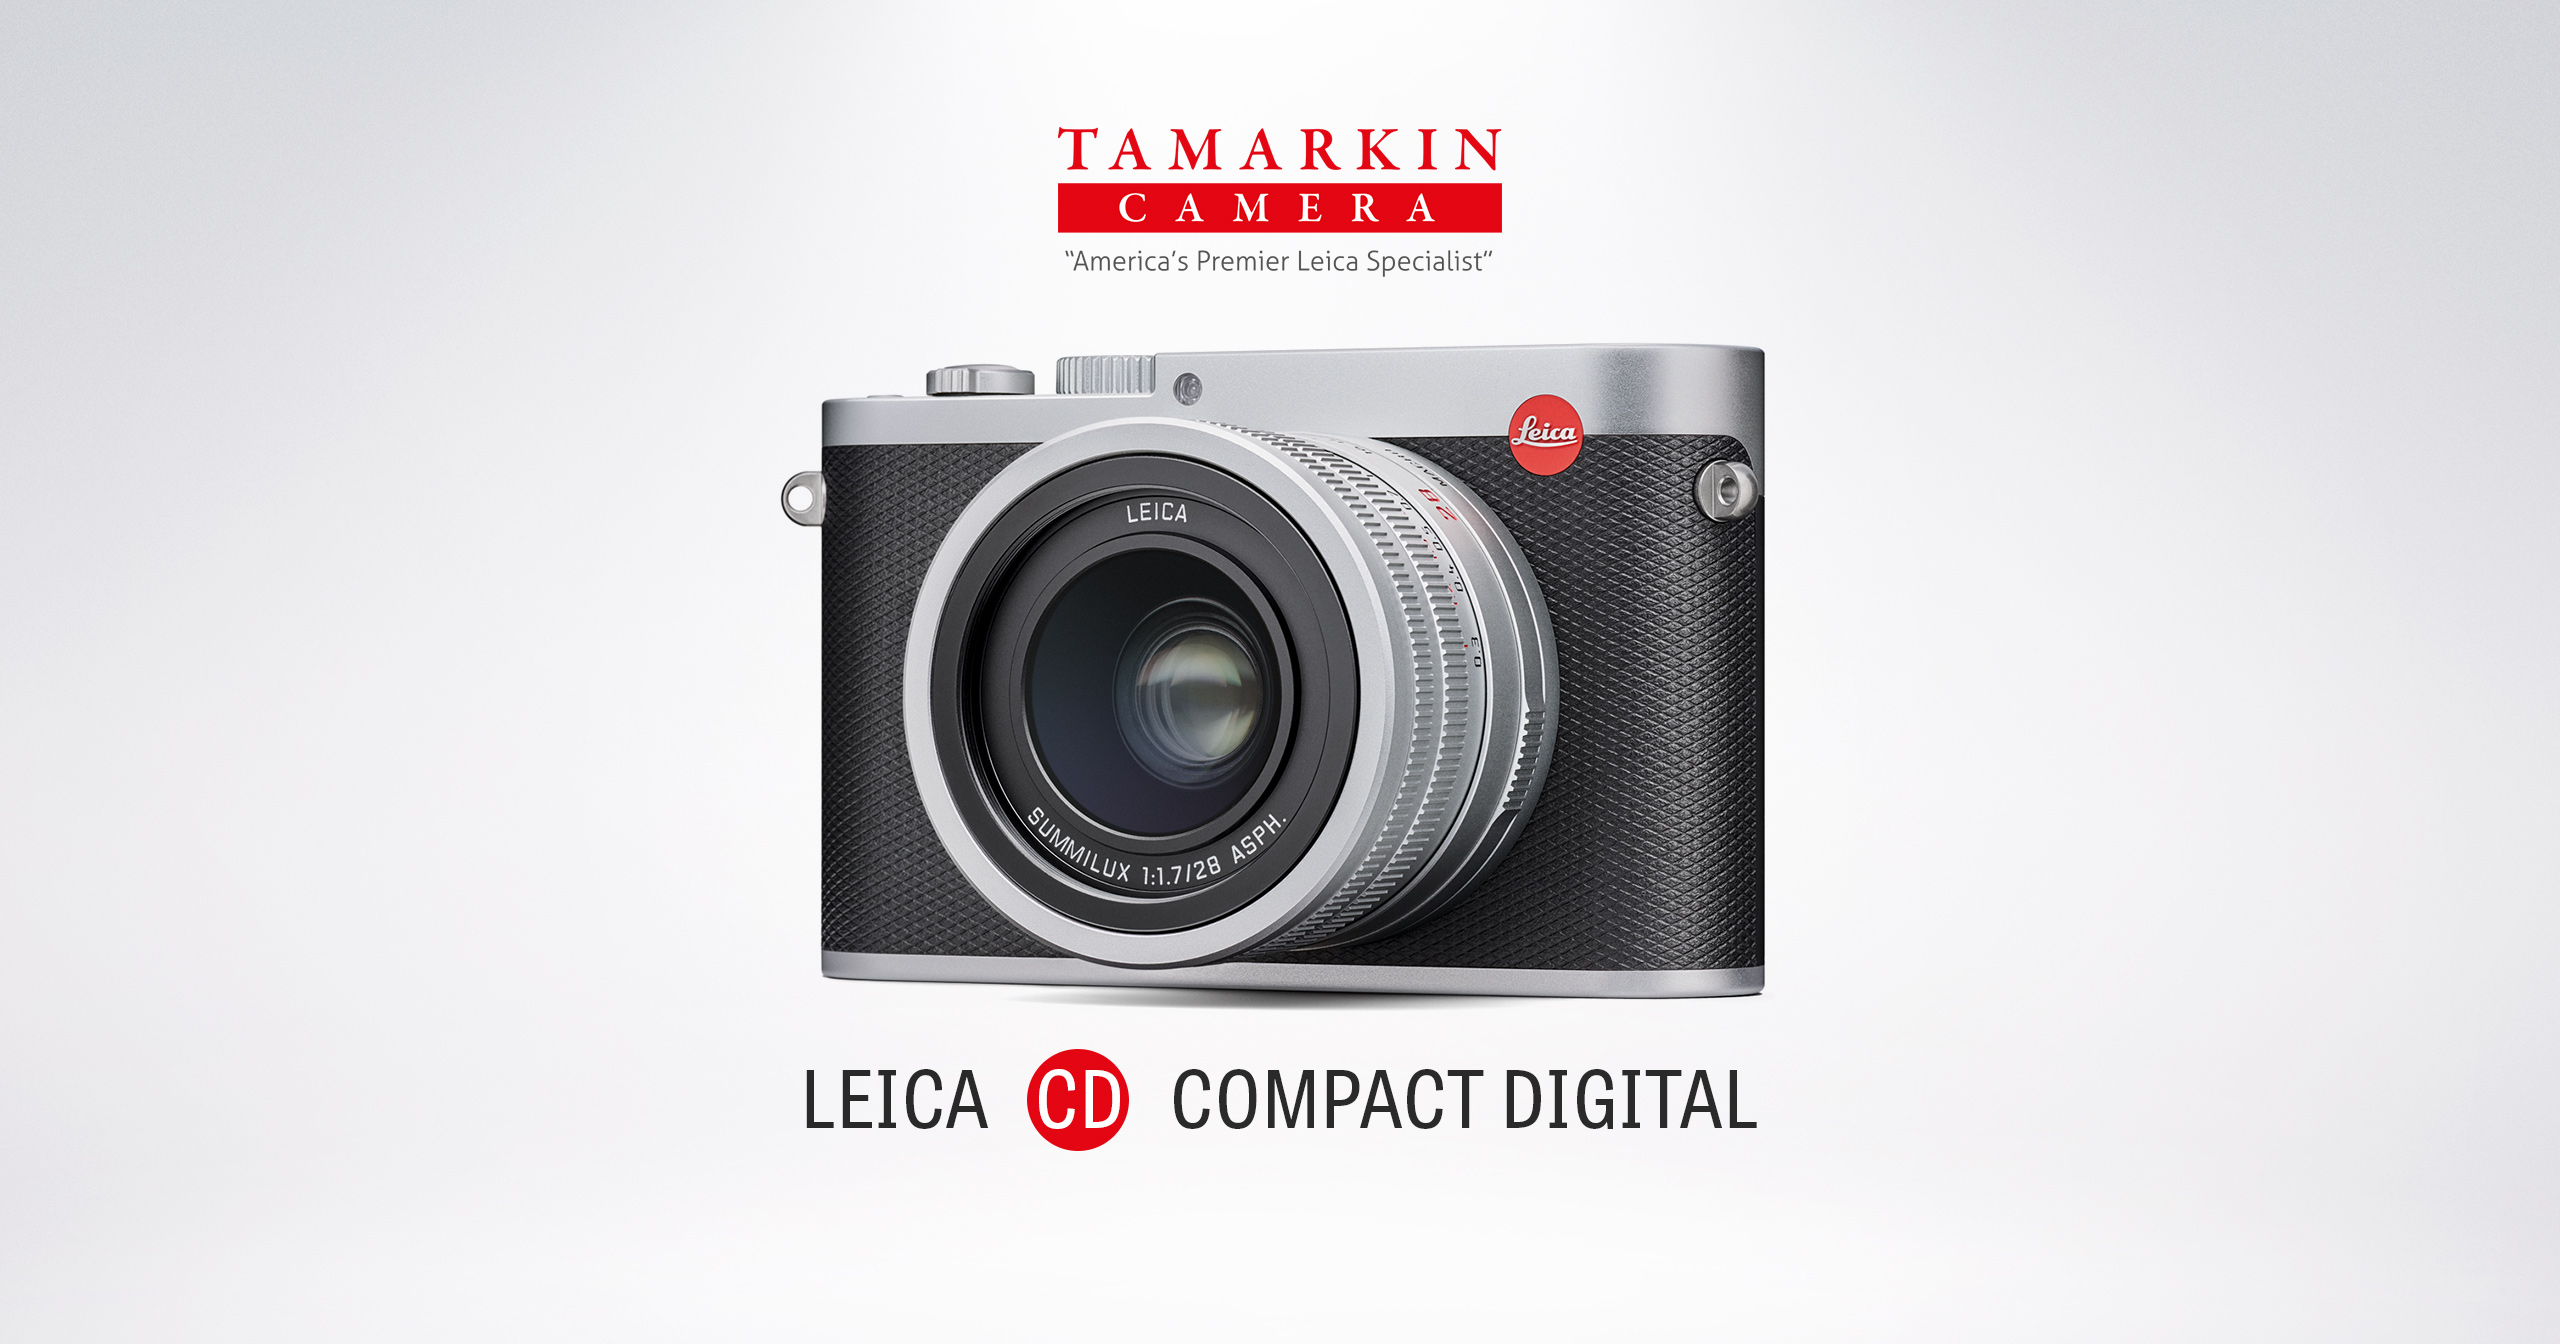 Tamarkin Camera  America's Premier Leica Specialist Since 1971